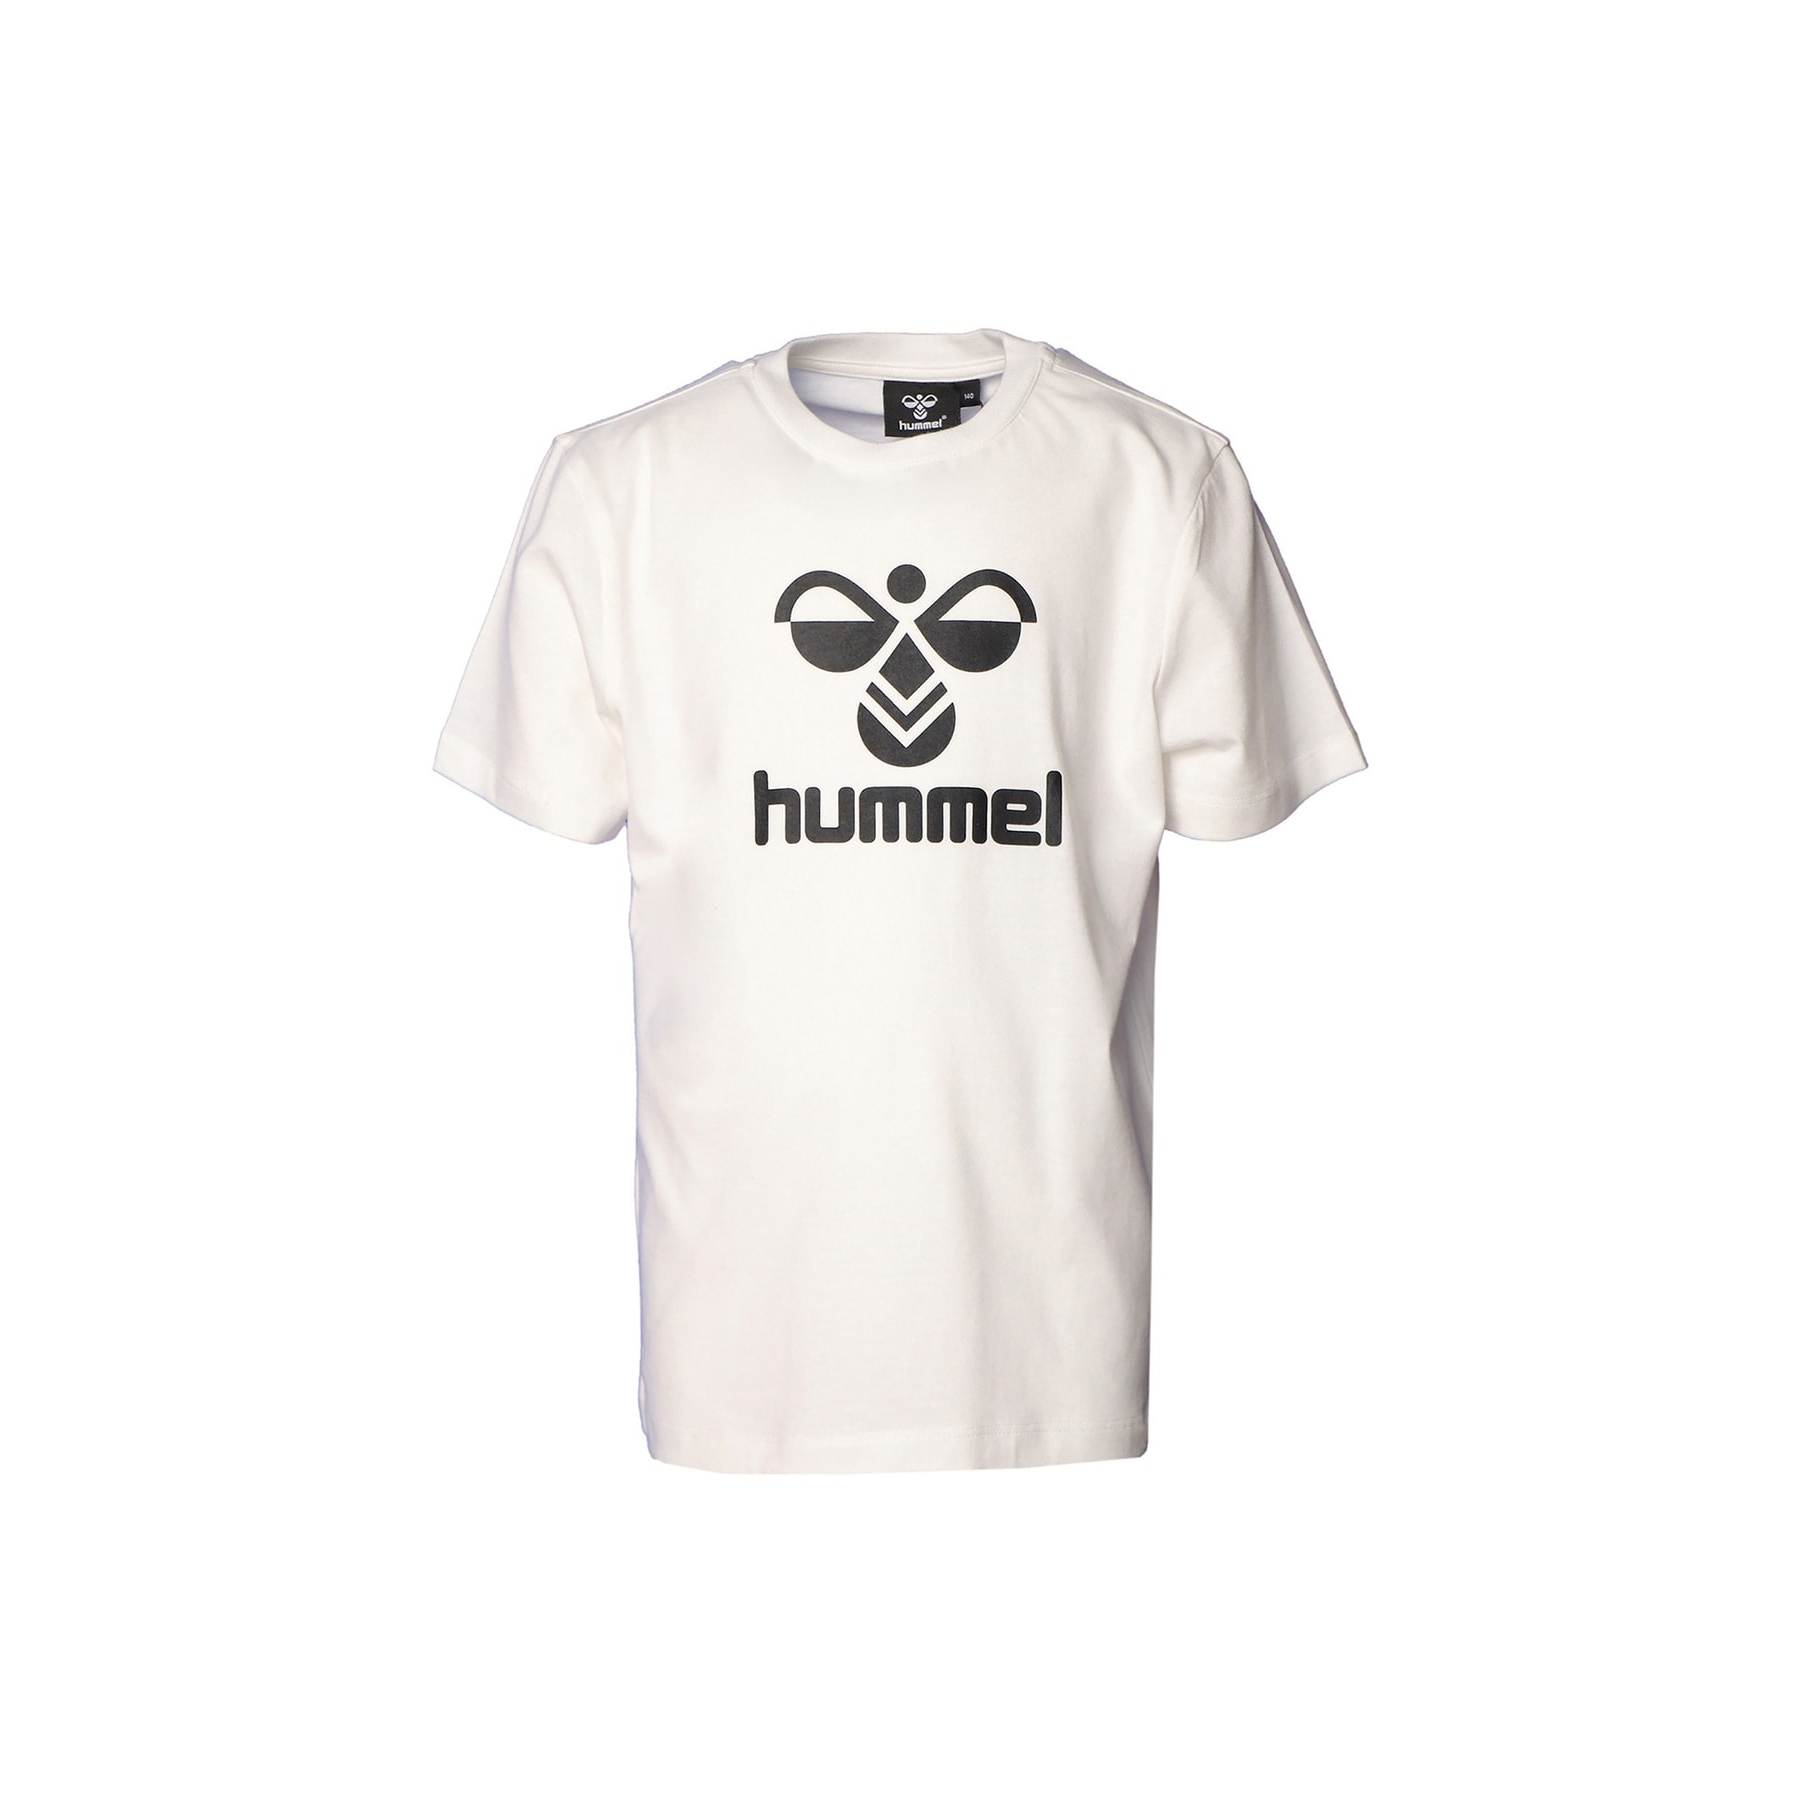 Hummel Erkek Çocuk Beyaz Tişört (911653-9003)